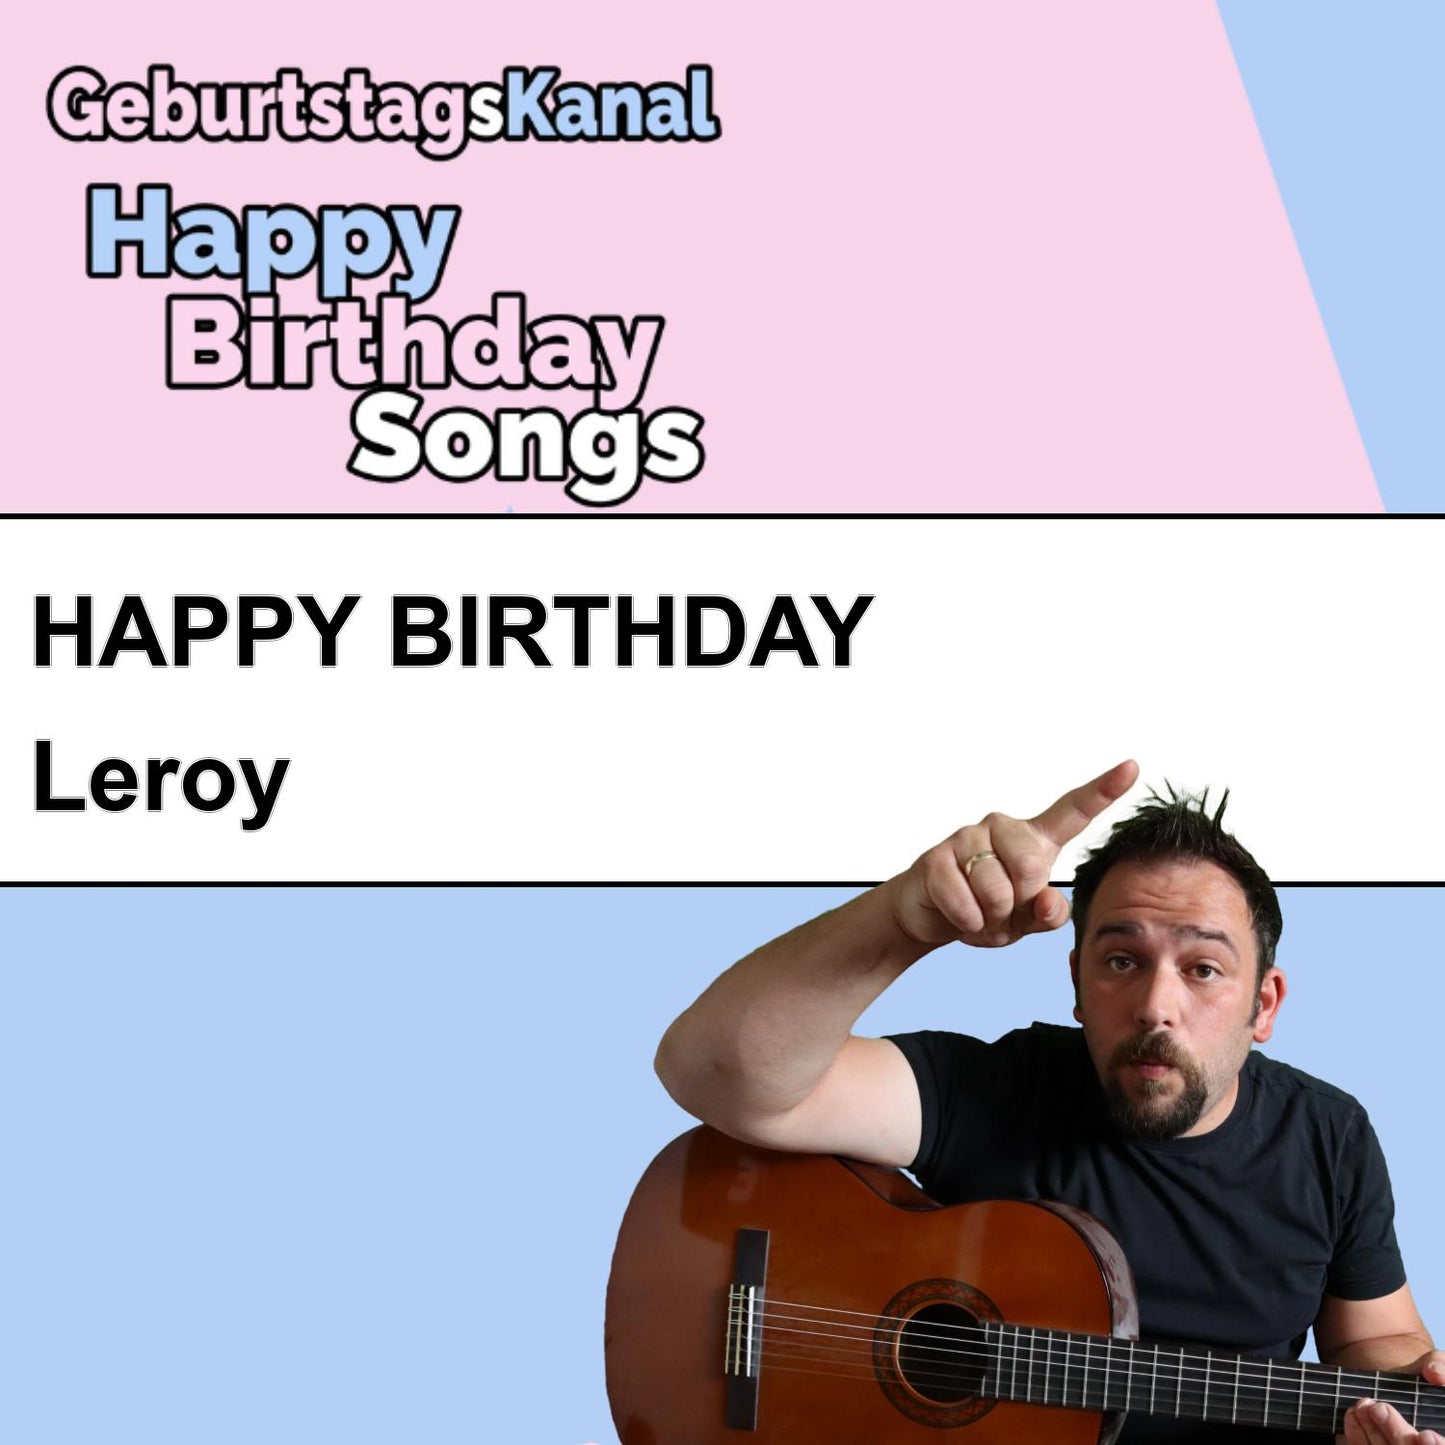 Produktbild Happy Birthday to you Leroy mit Wunschgrußbotschaft